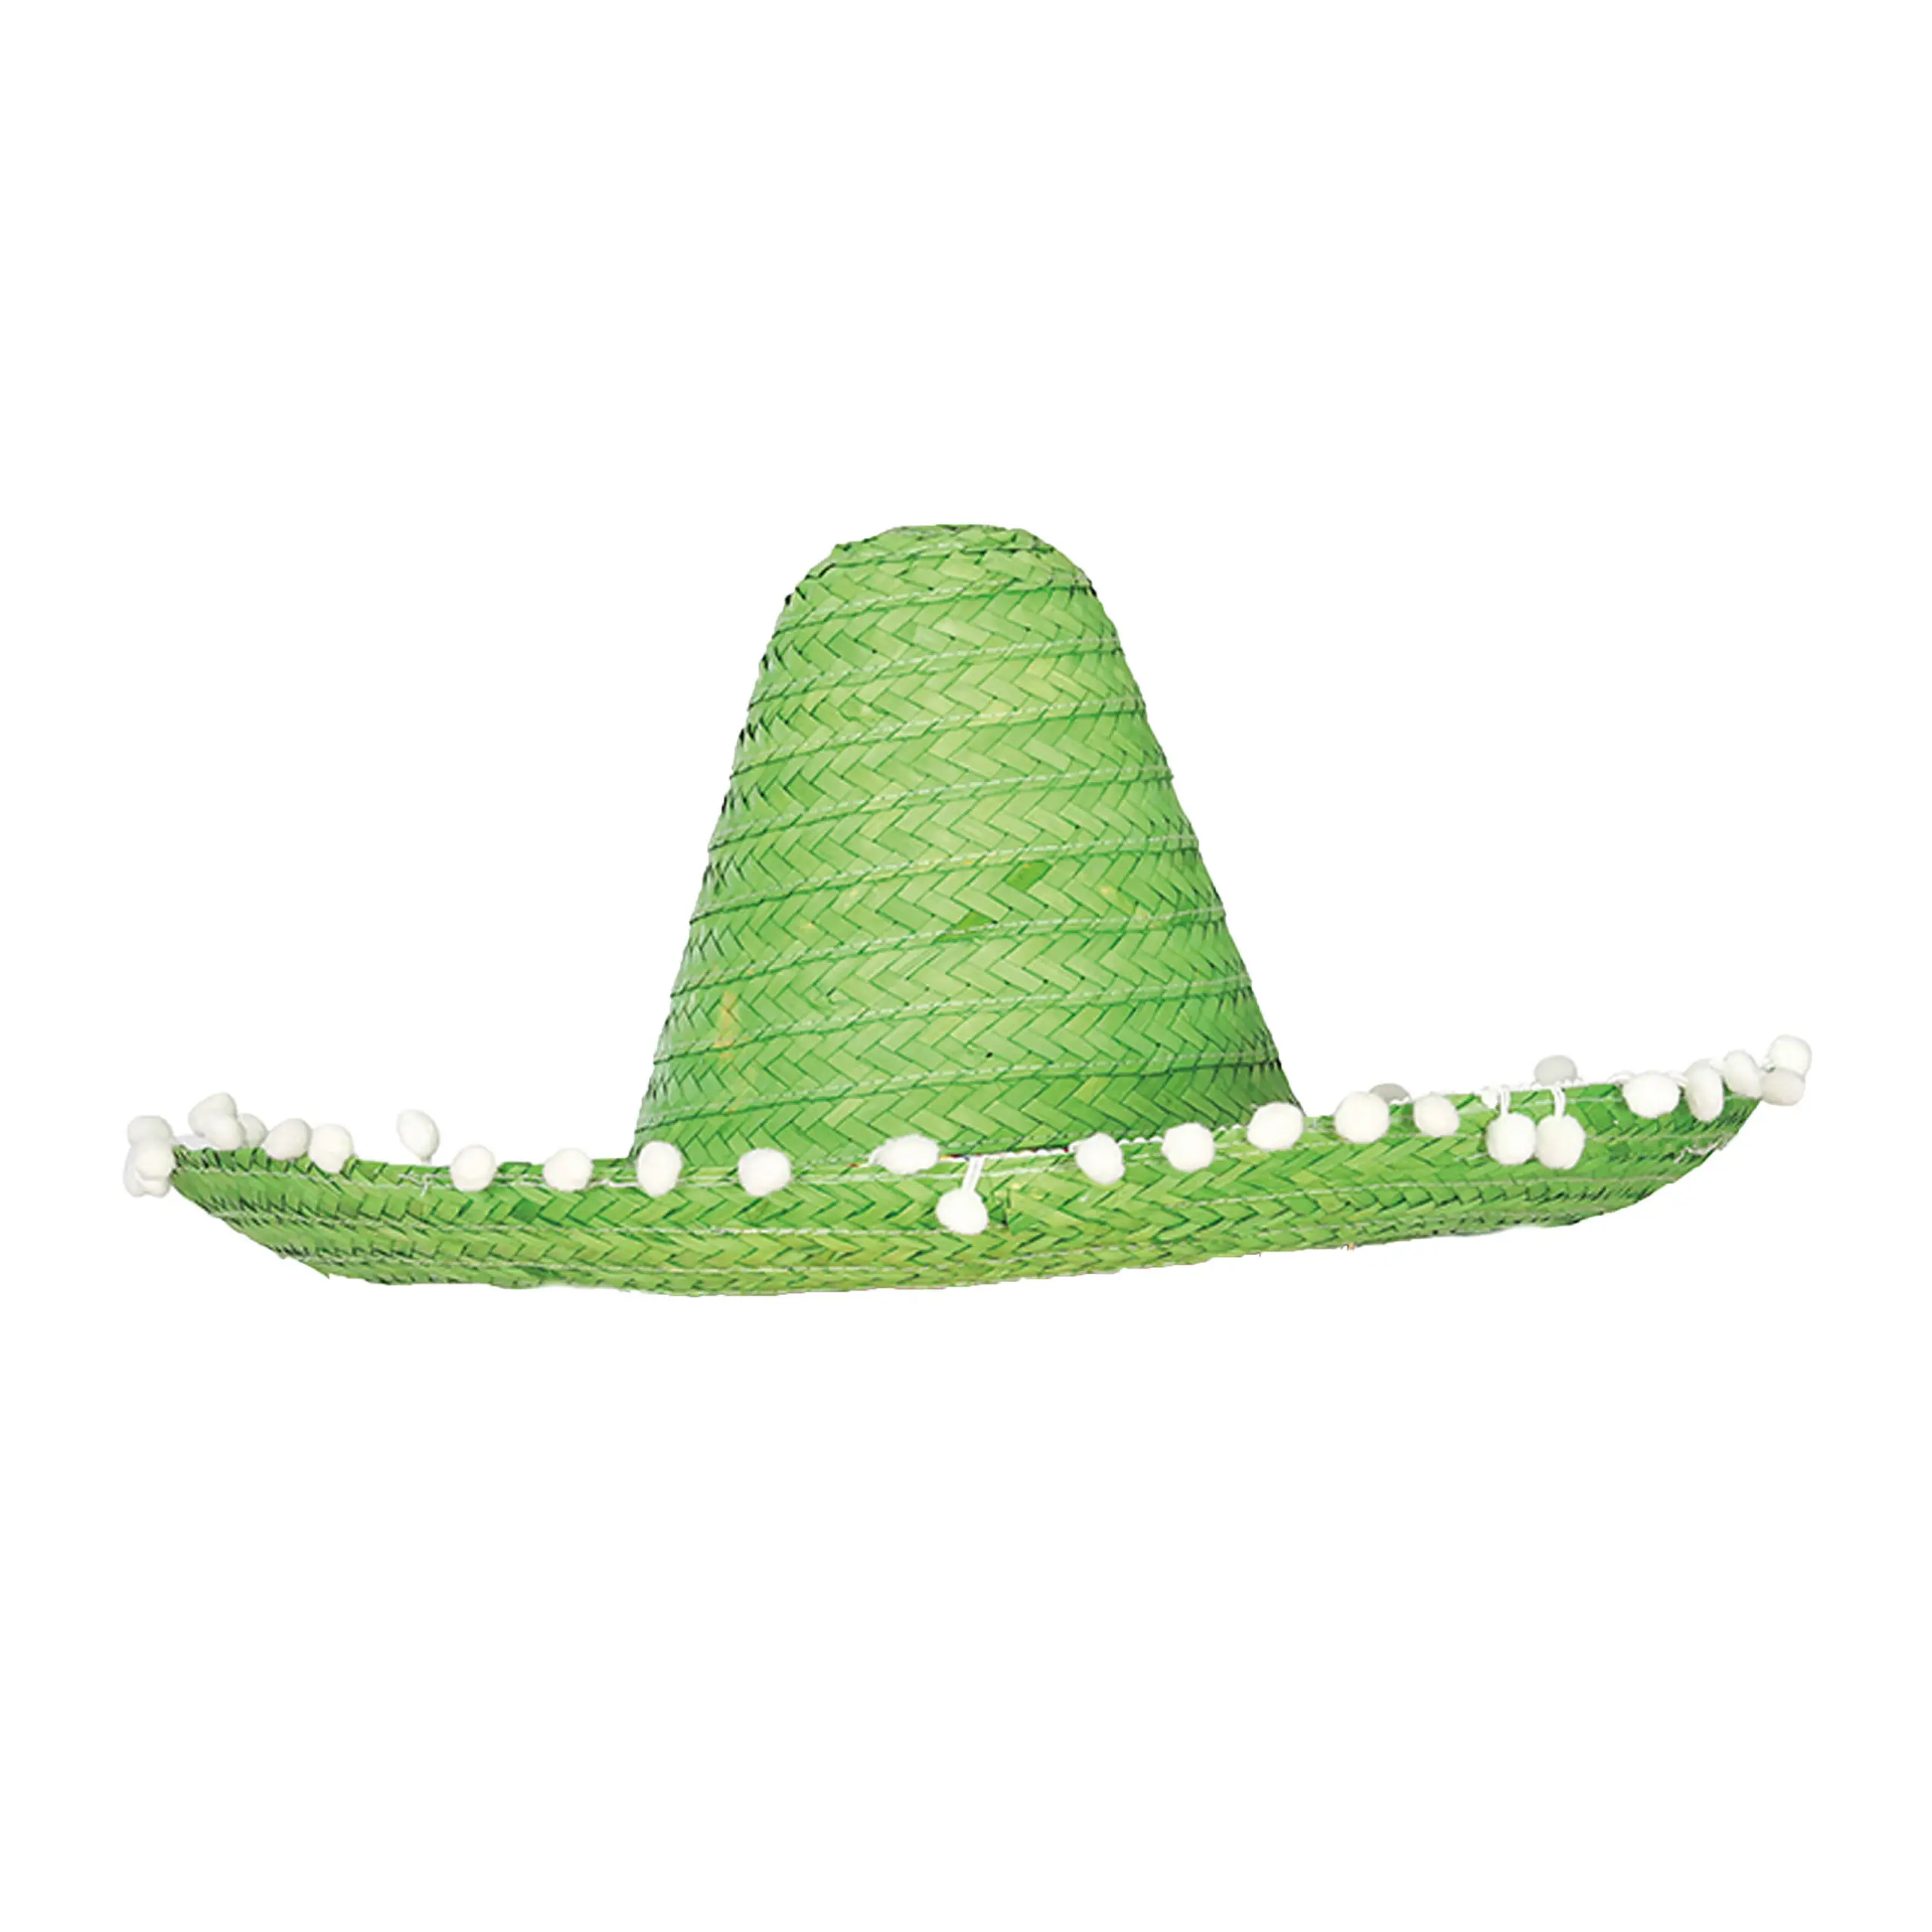 Fabrika kaynağı yüksek kaliteli meksika Sombrero hasır şapkalar ile süsler için parti veya tatil en düşük fiyata özelleştirilmiş renk